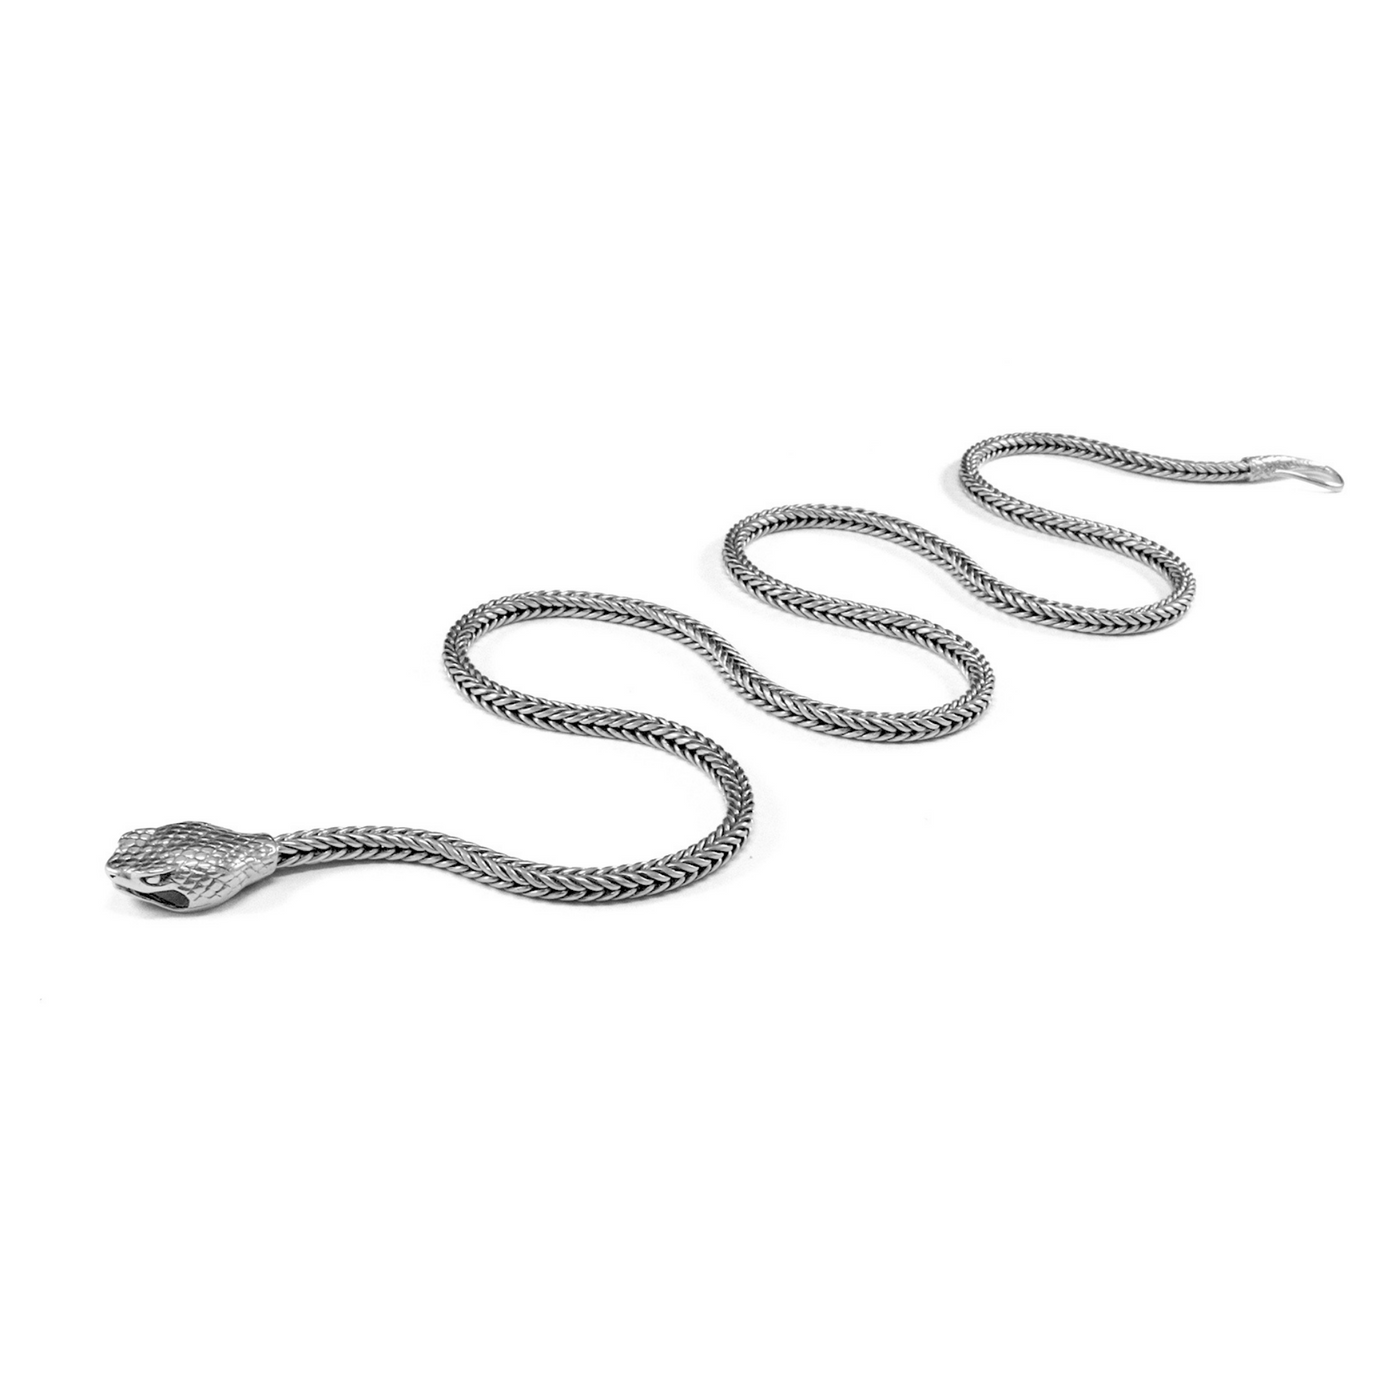 蟒蛇银项链